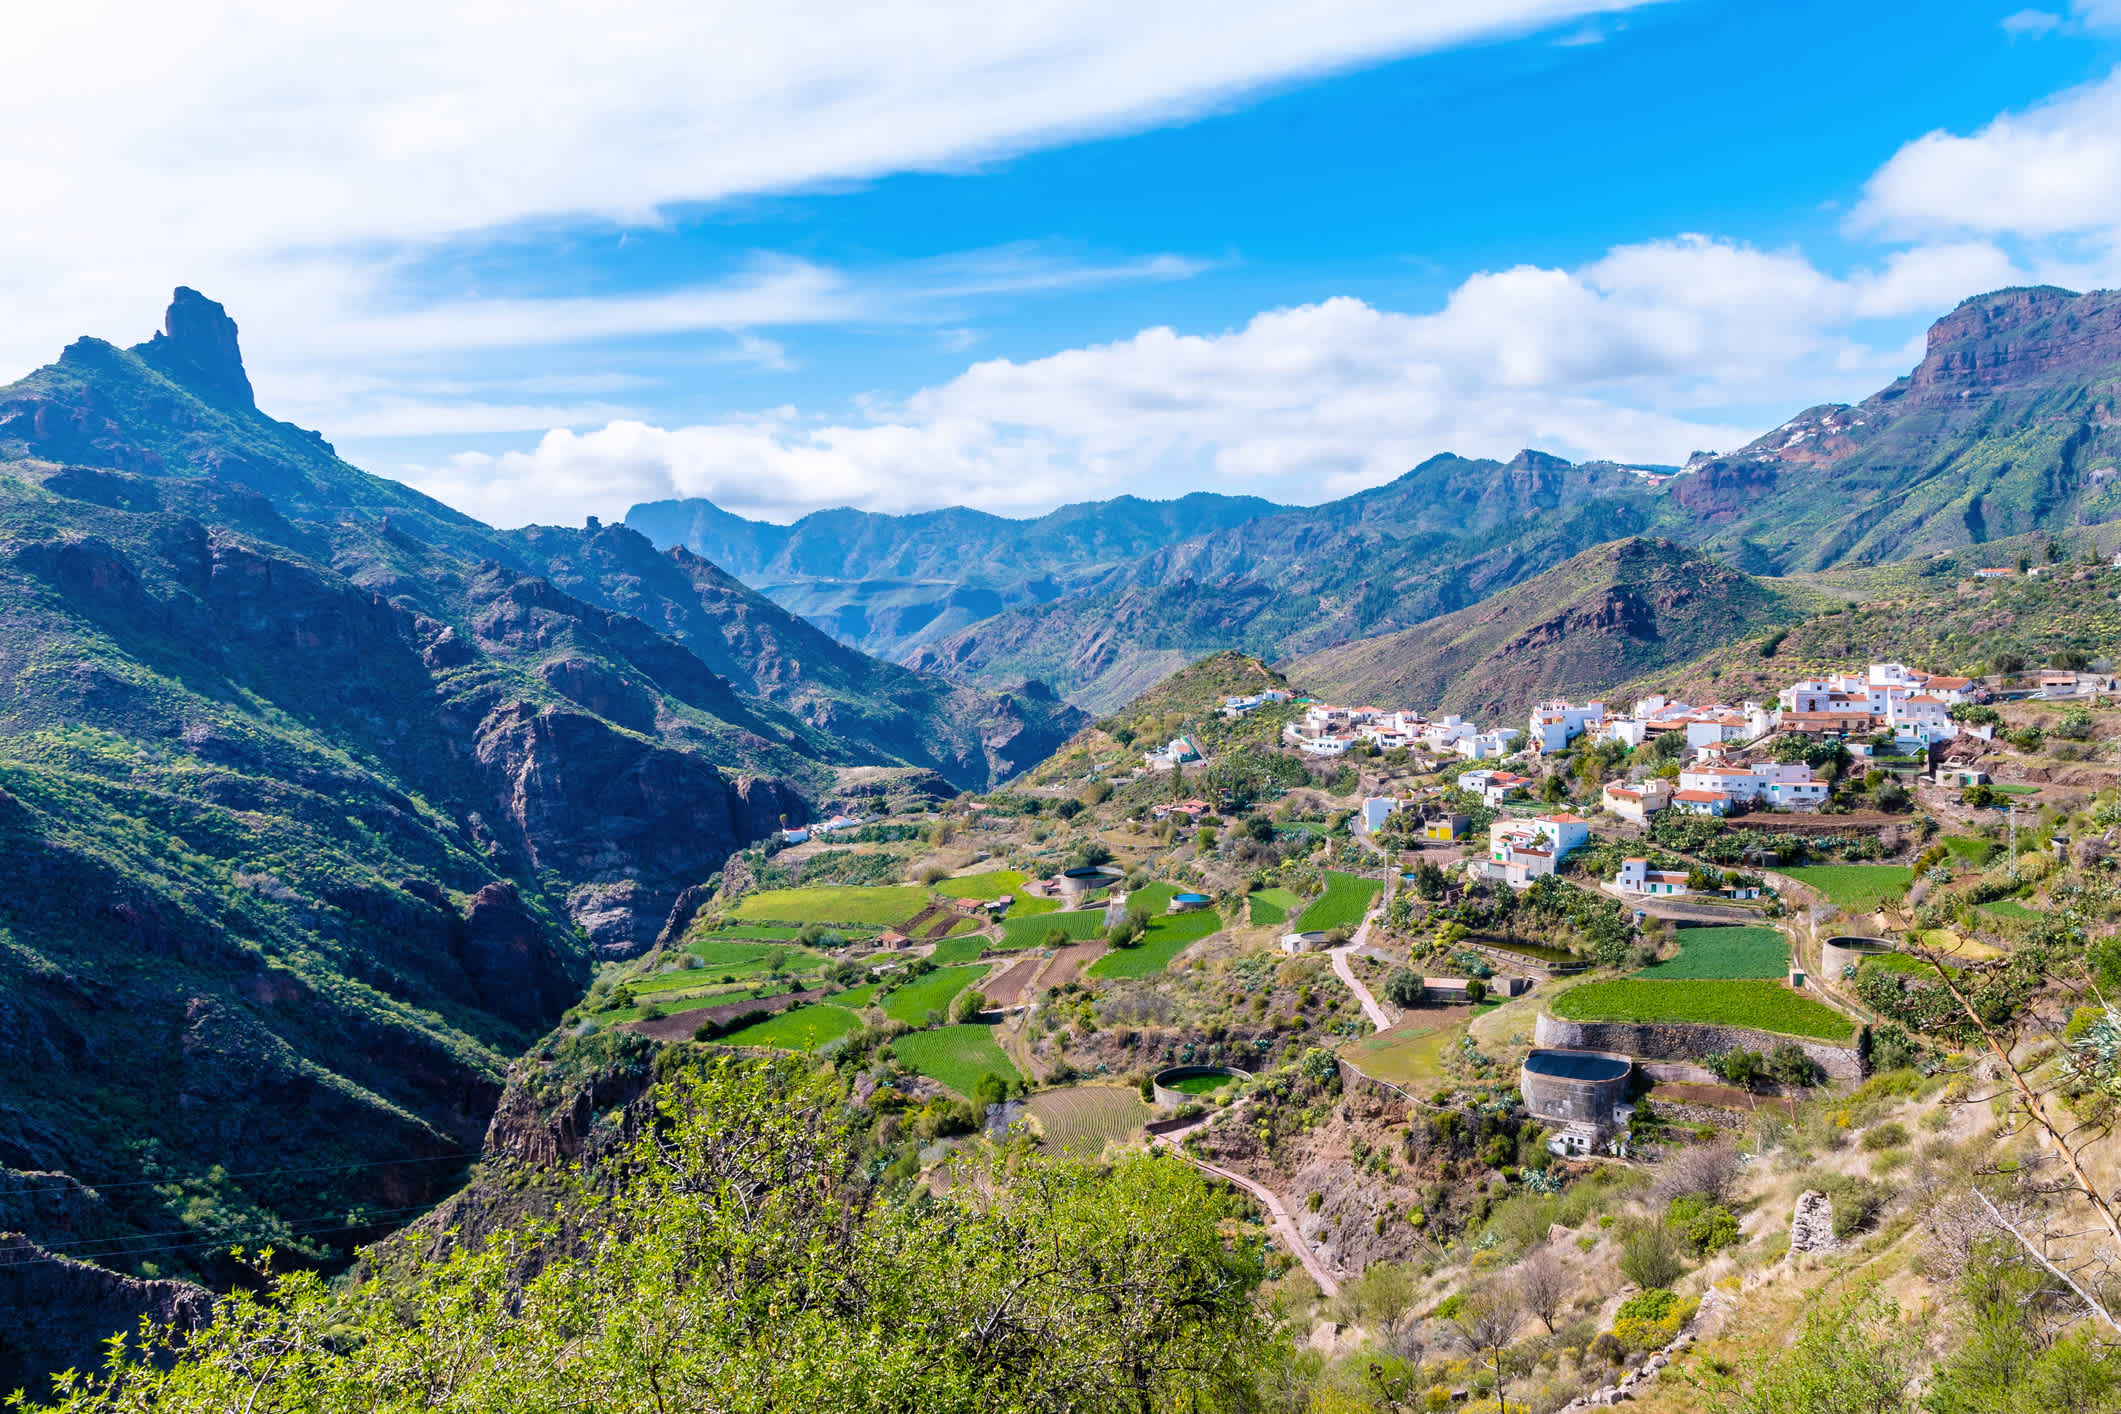 Tejeda est un village pittoresque situé au centre de l'île de Grande Canarie, en Espagne, avec une vue à couper le souffle.